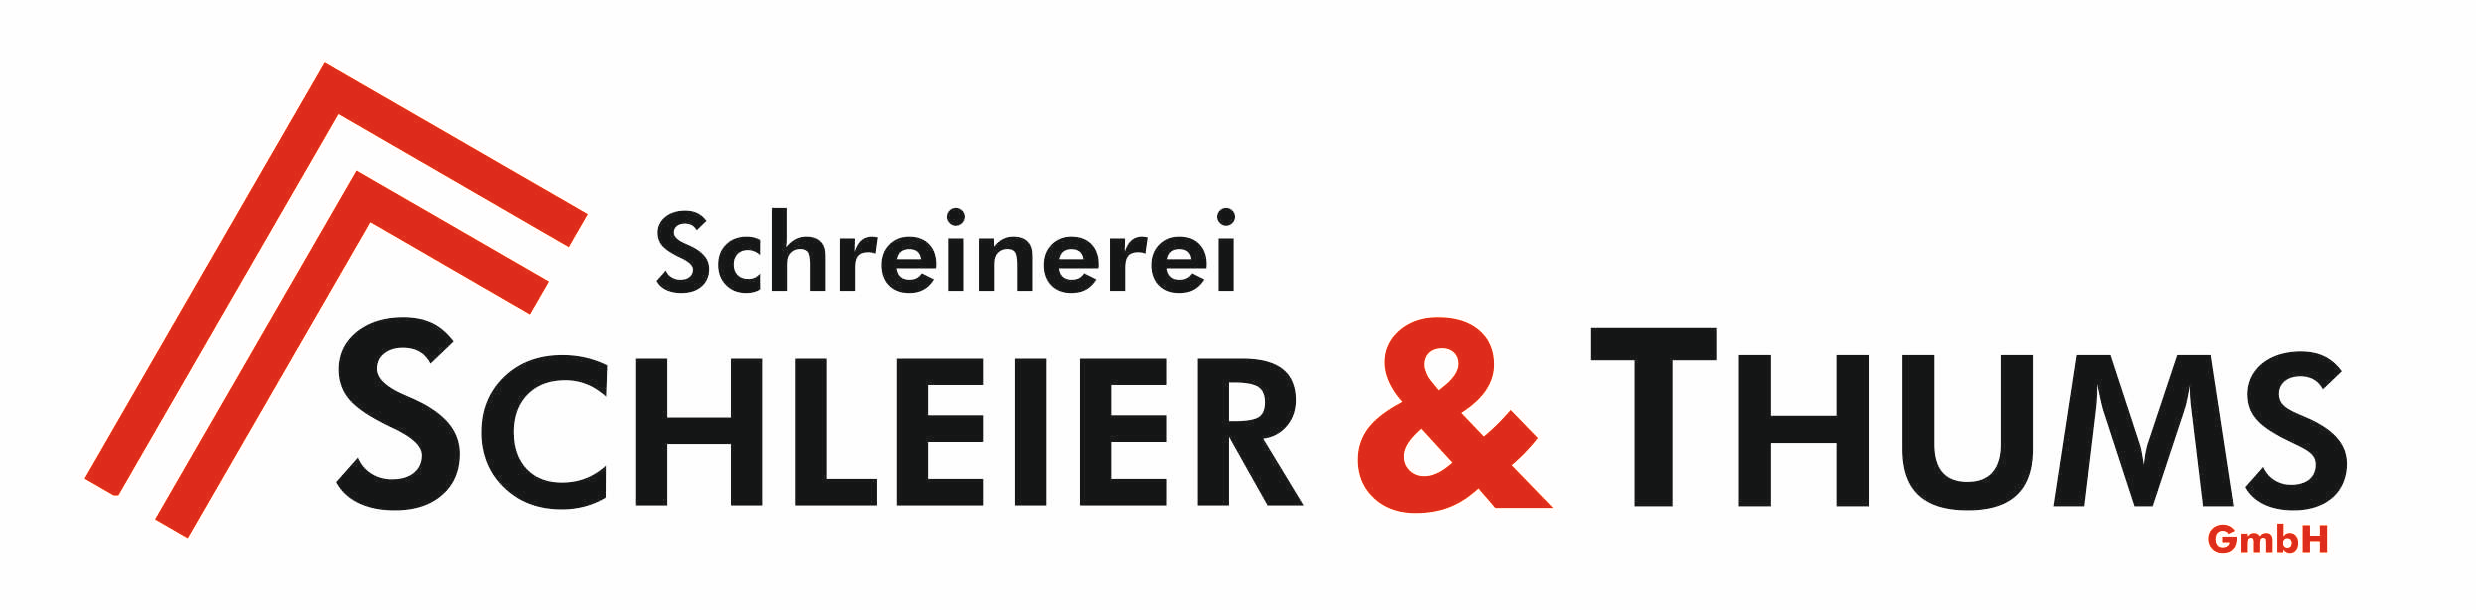 Logo der Schreinerei Schleier & Thums GmbH